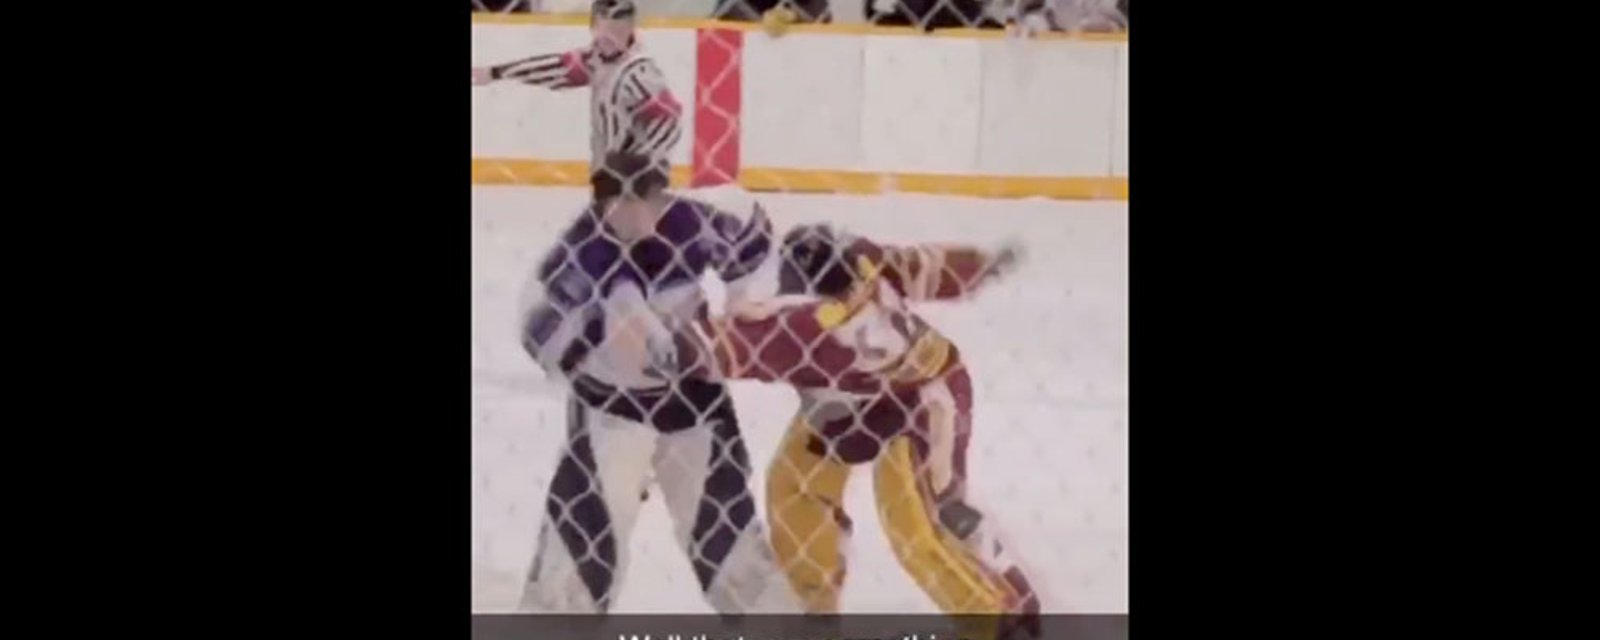 Goalie scrap from Saskatchewan junior league goes viral